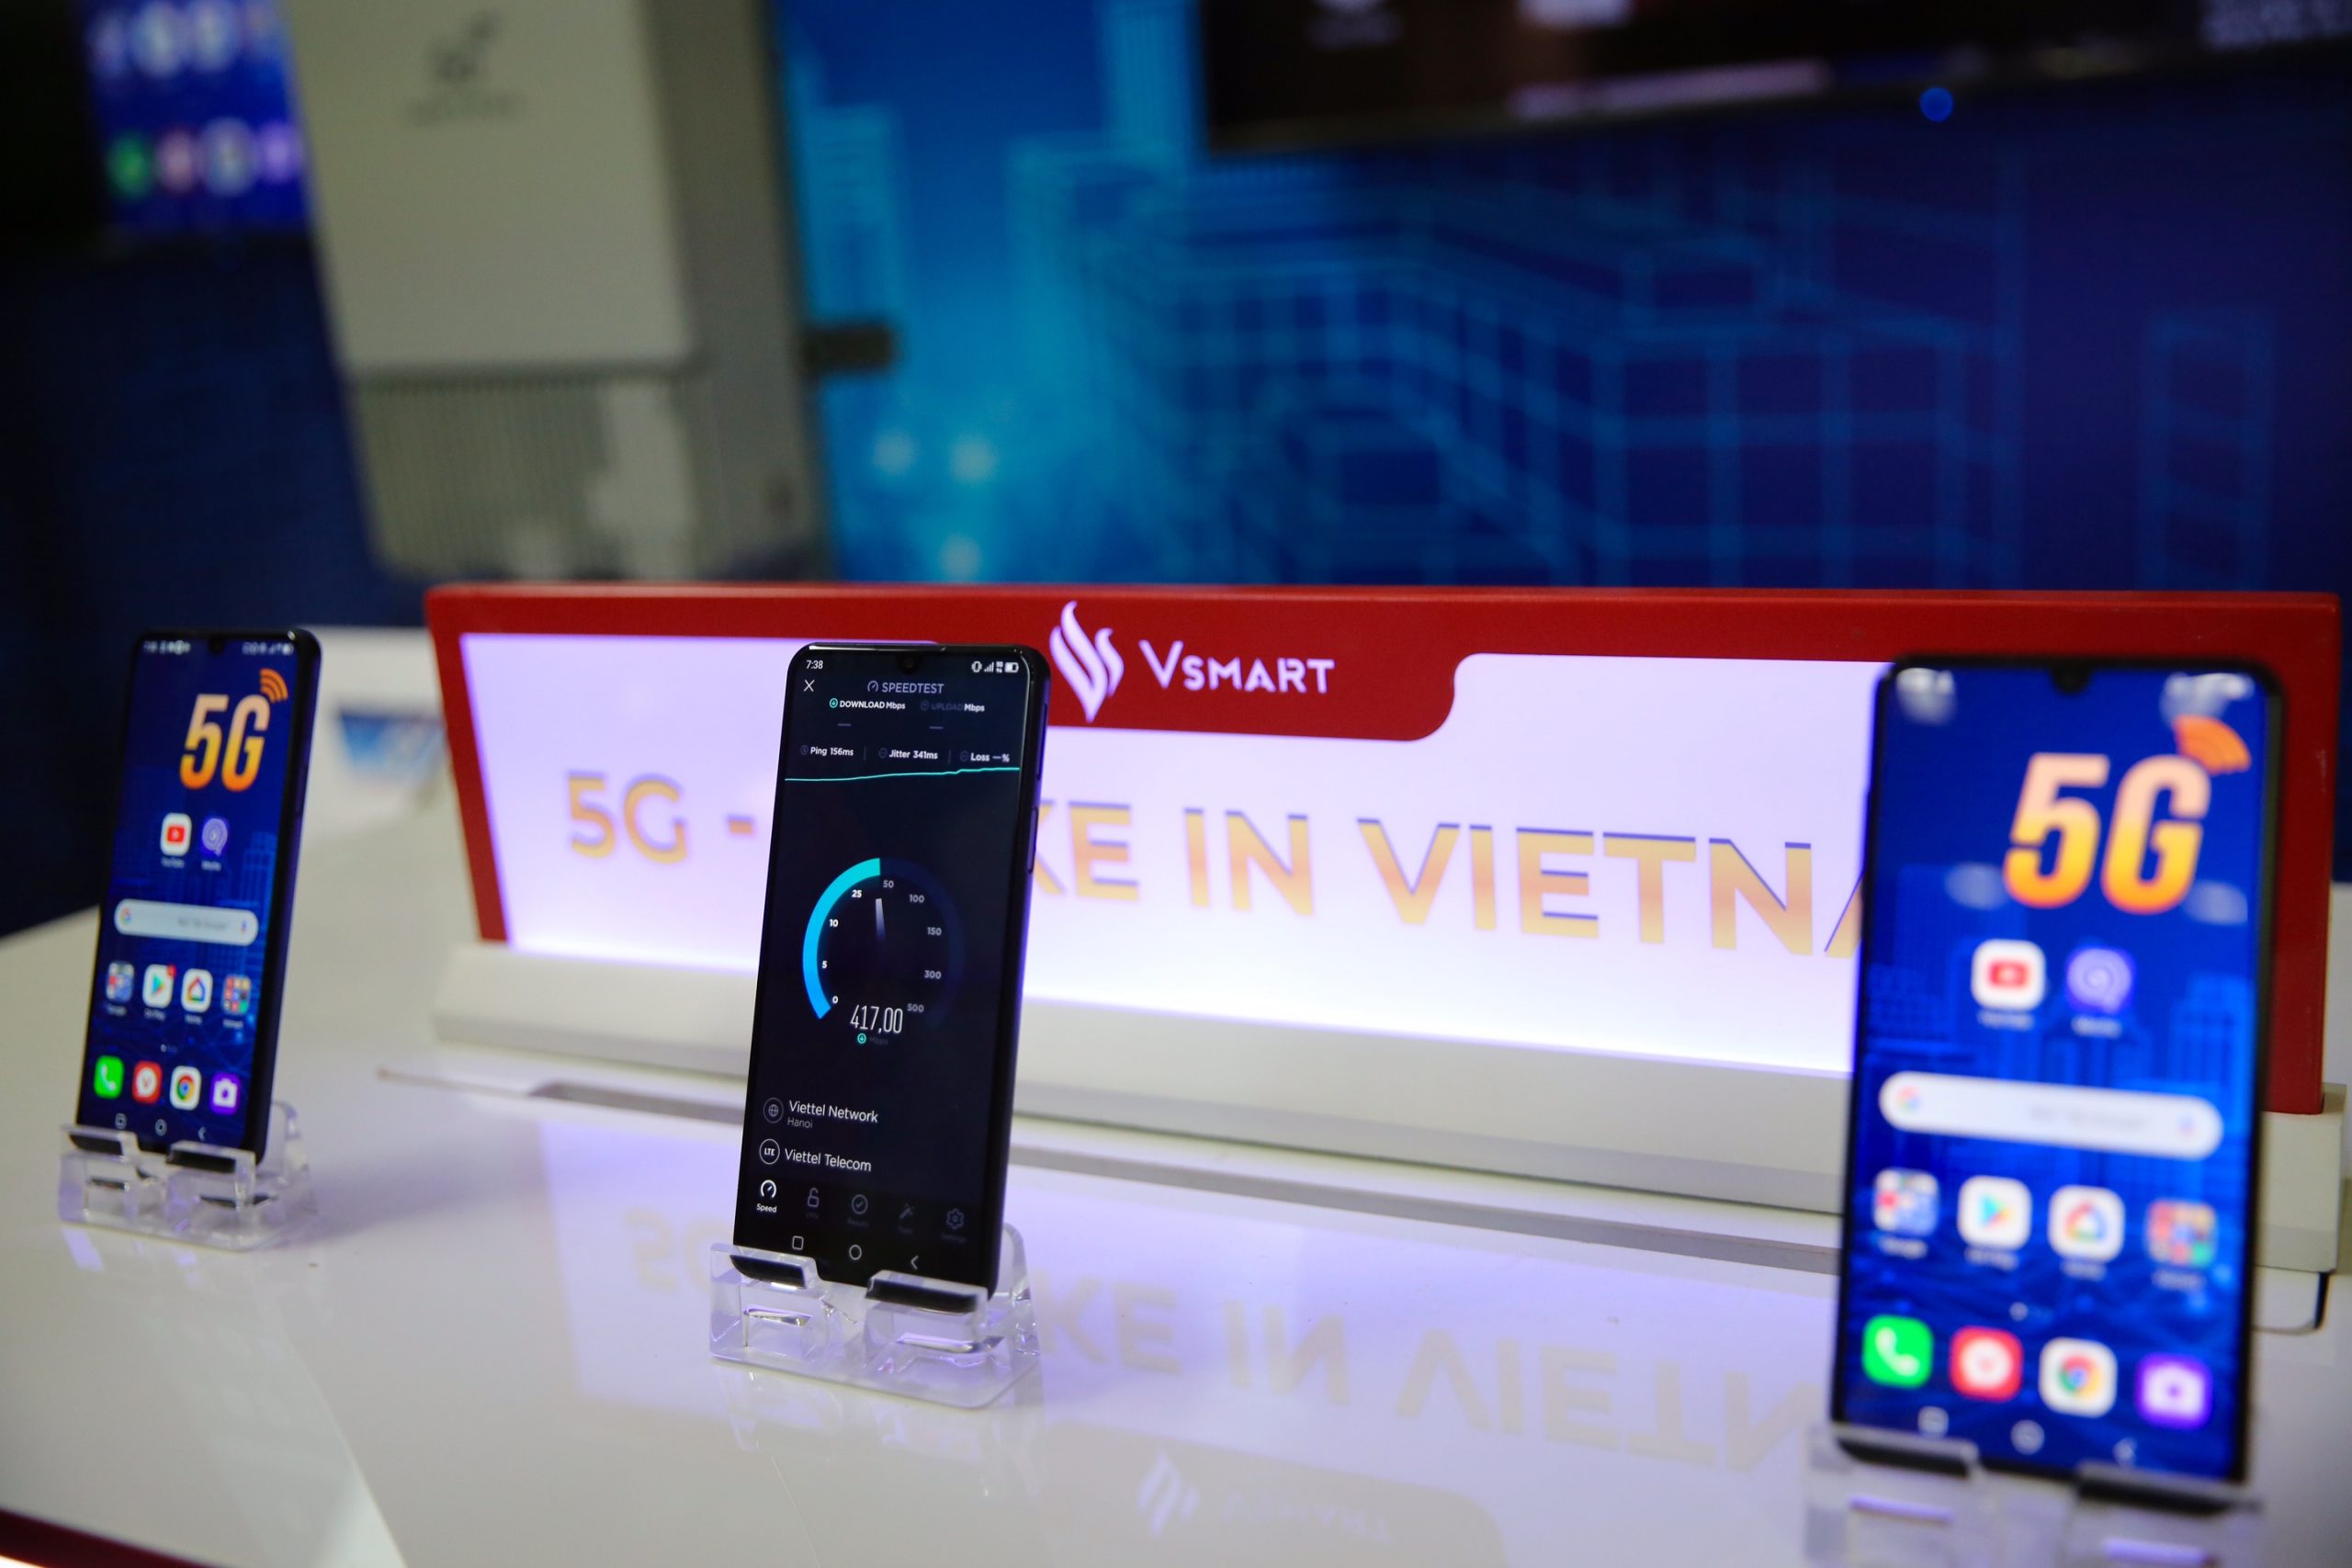 Vinsmart phát triển thành công điện thoại 5G: Tích hợp giải pháp bảo mật sử dụng công nghệ điện toán lượng tử